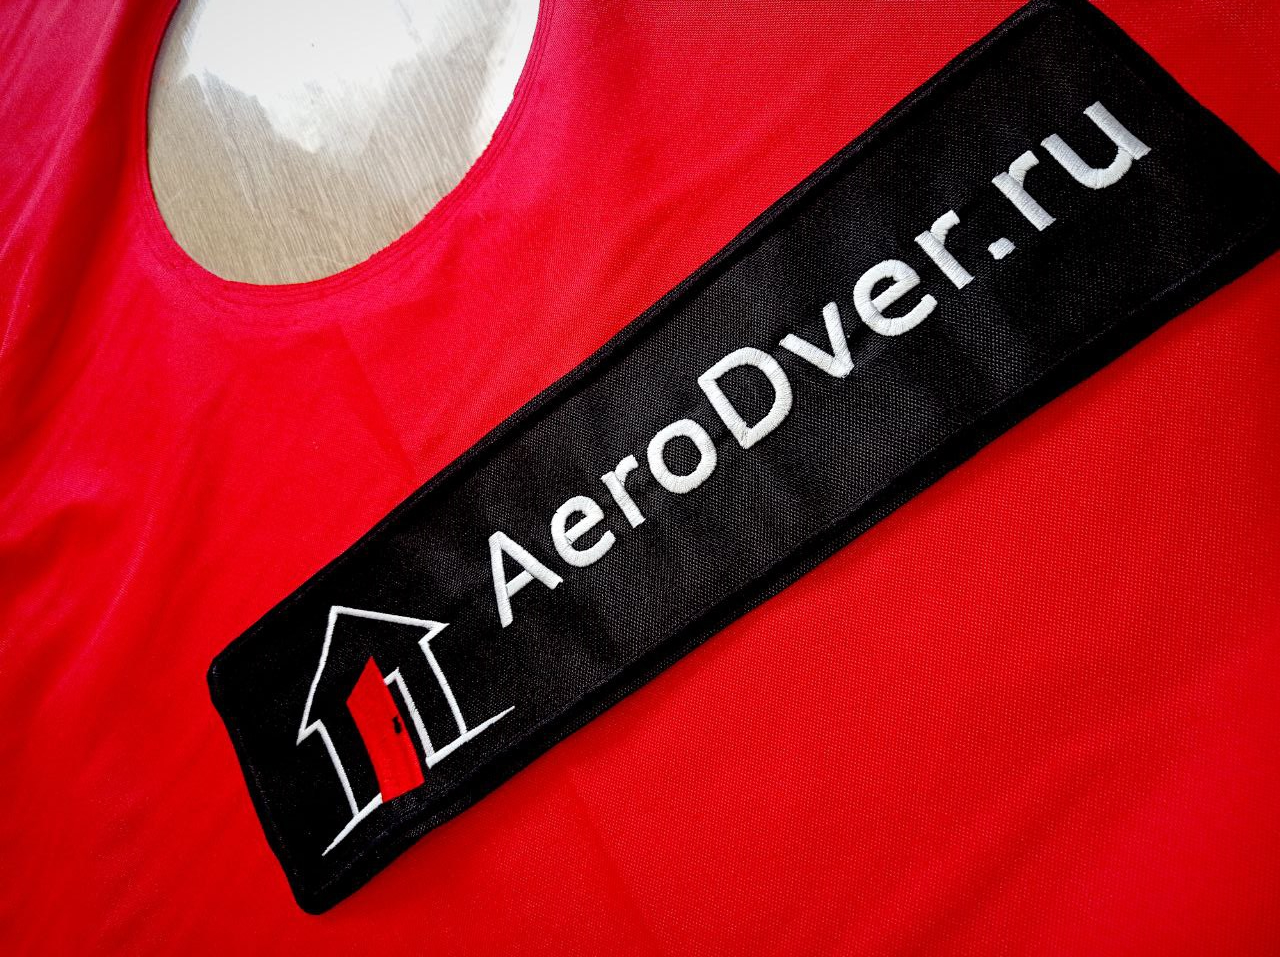 Купить АэроДверь Промышленную для обследования больших складов и торговых центров от Российской Компании AeroDver.ru 0